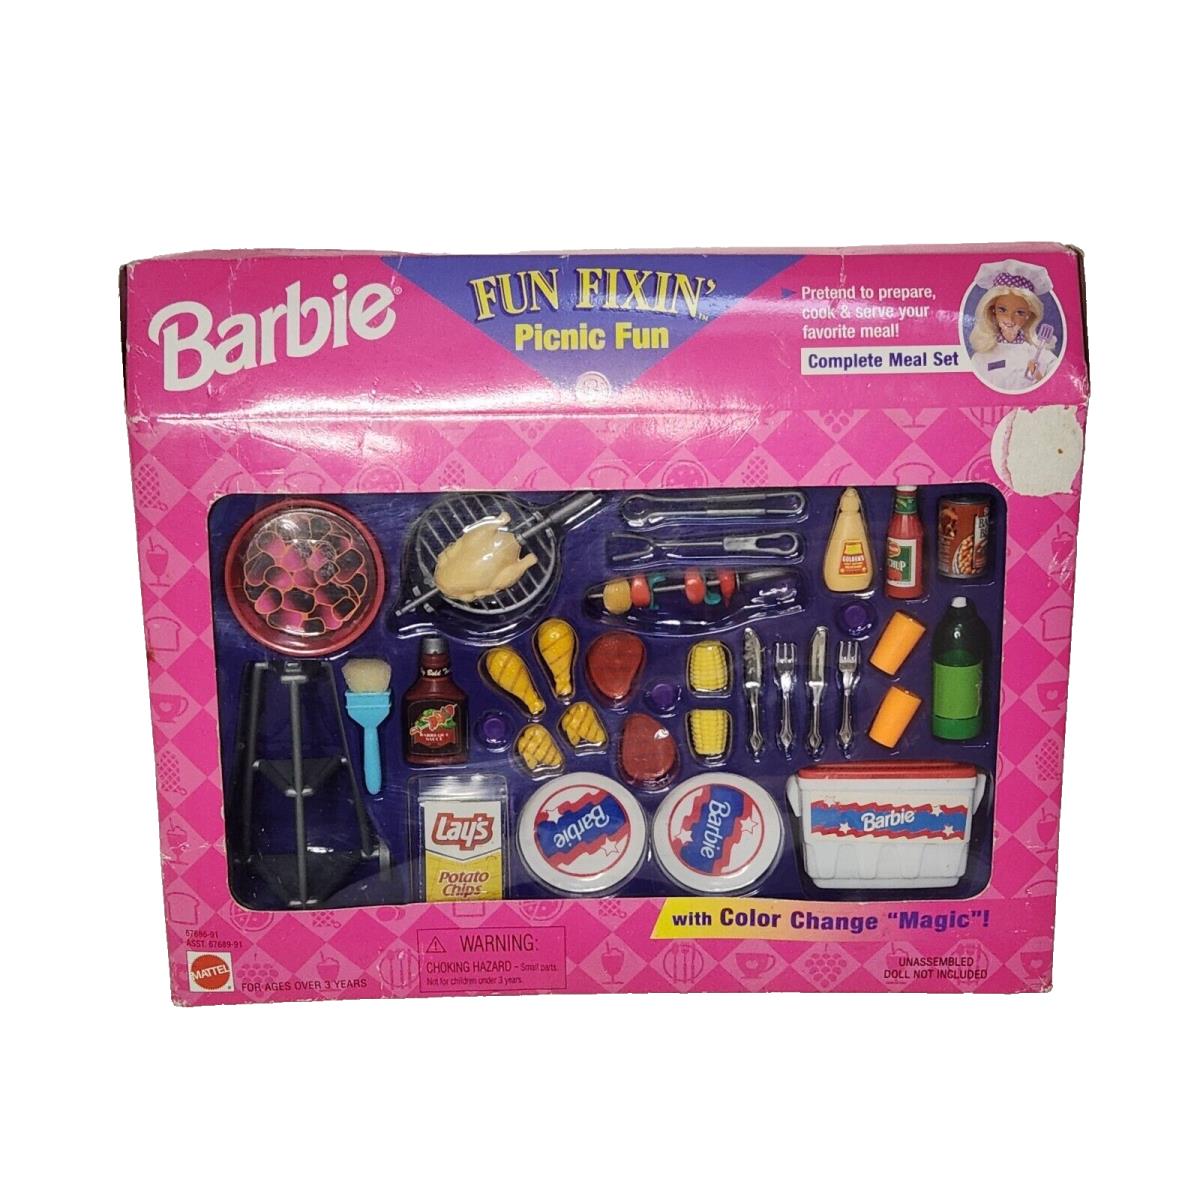 Vintage 1997 Mattel Fun Fixin Picnic Fun Barbie Complete Color Change